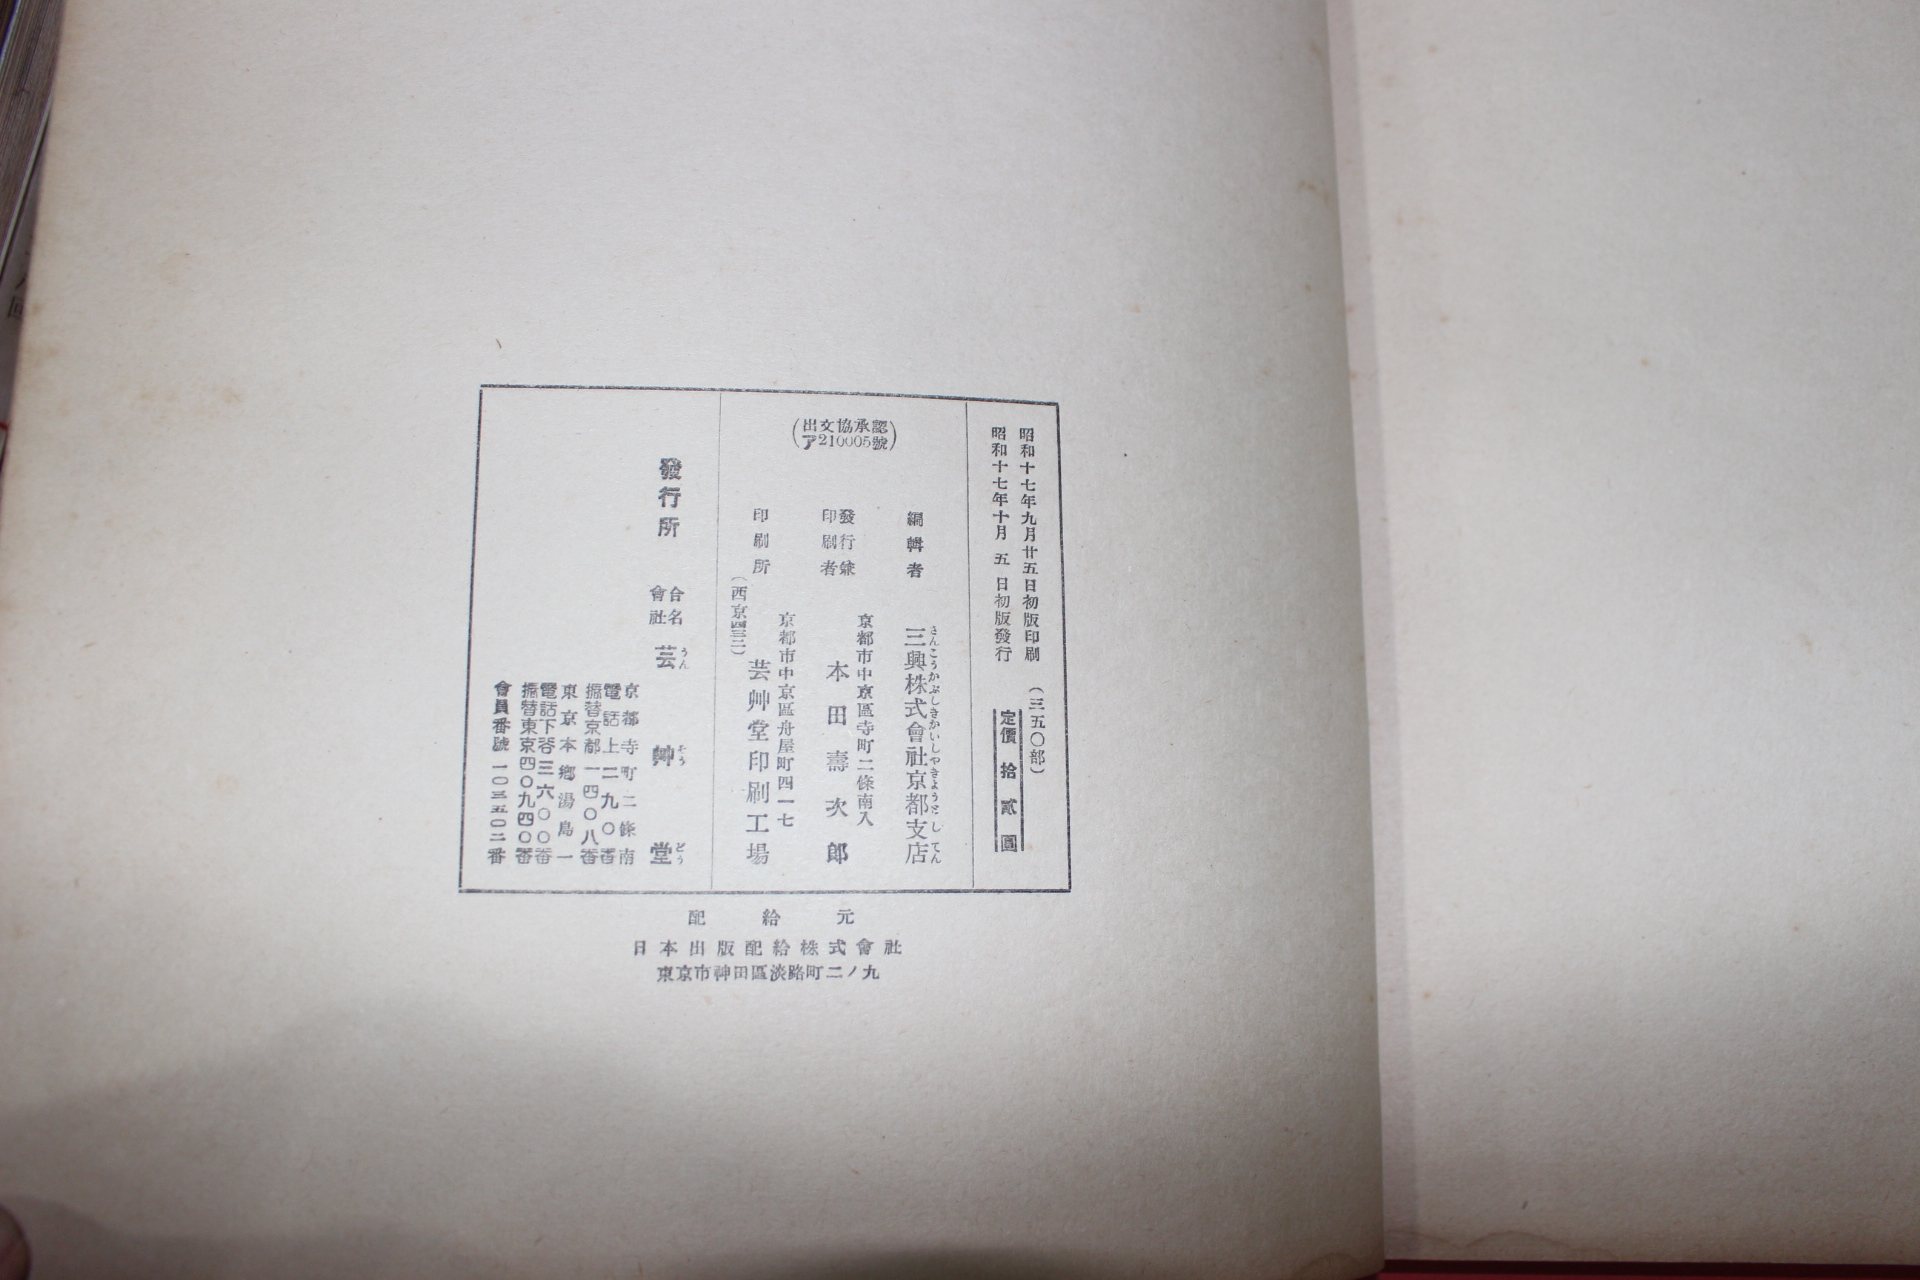 1942년(소화17년) 제4회 염직문화전람회도록(染織文化展覽會圖錄)